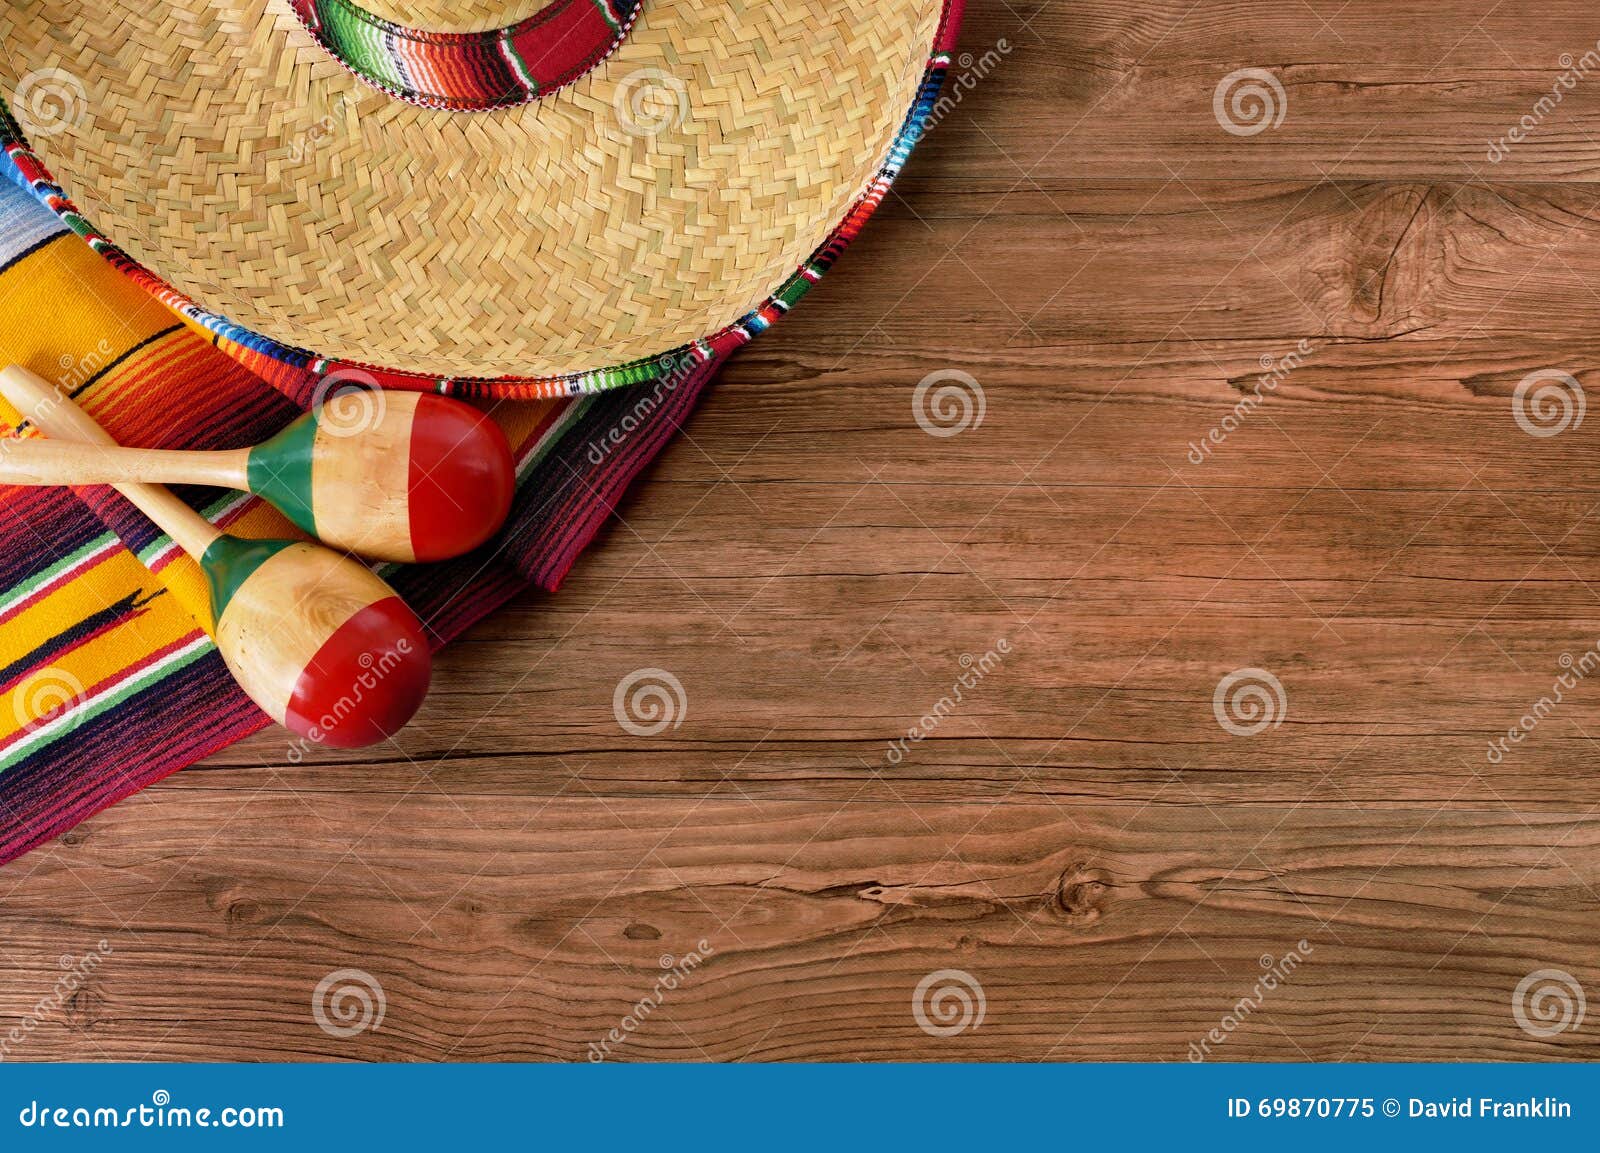 mexico cinco de mayo wood background mexican sombrero